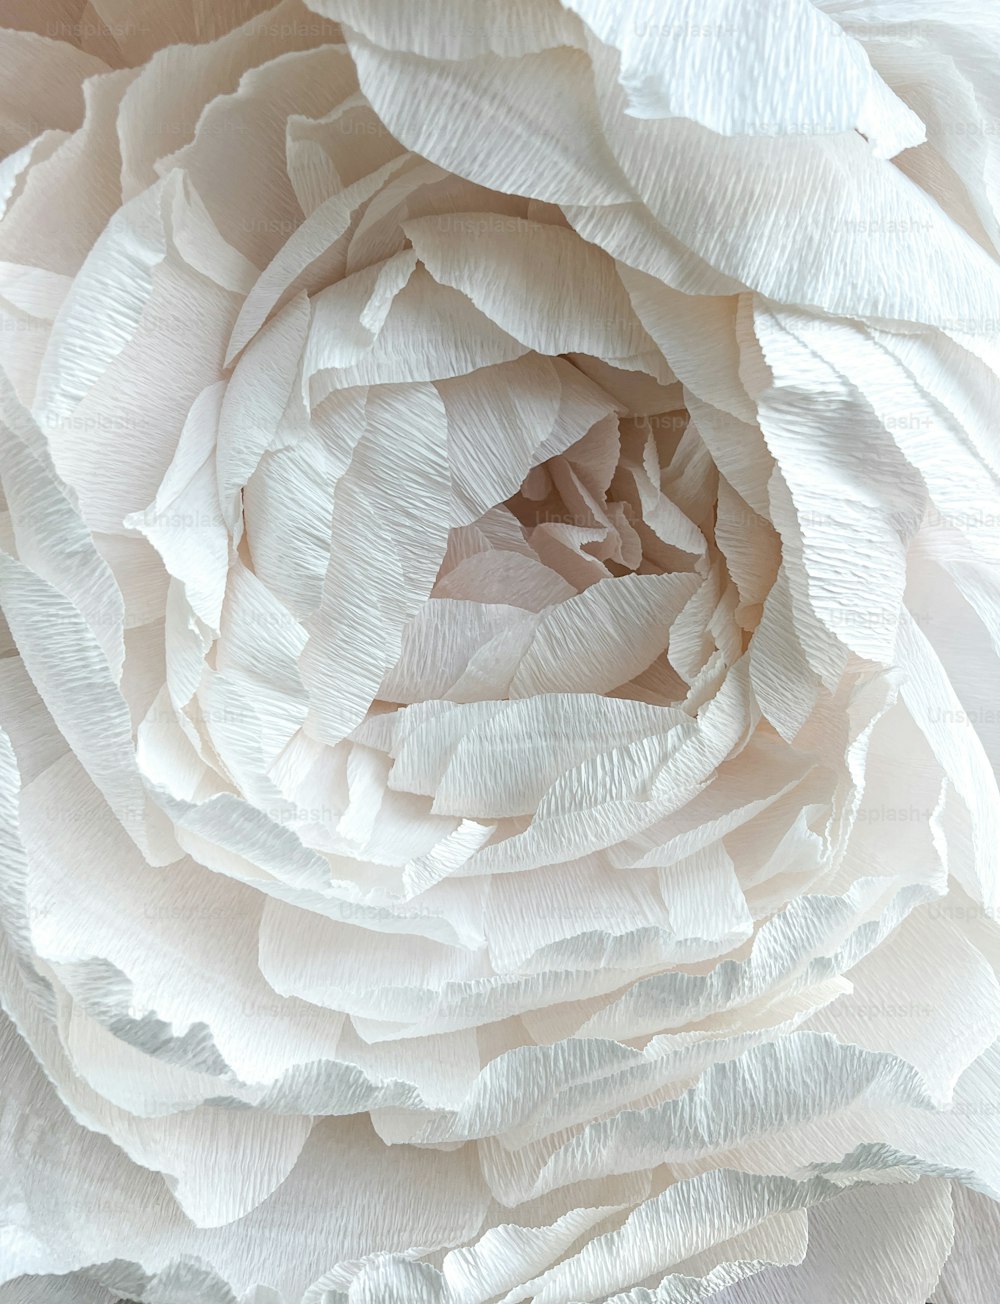 Gros plan d'une grande fleur blanche photo – Texture Photo sur Unsplash